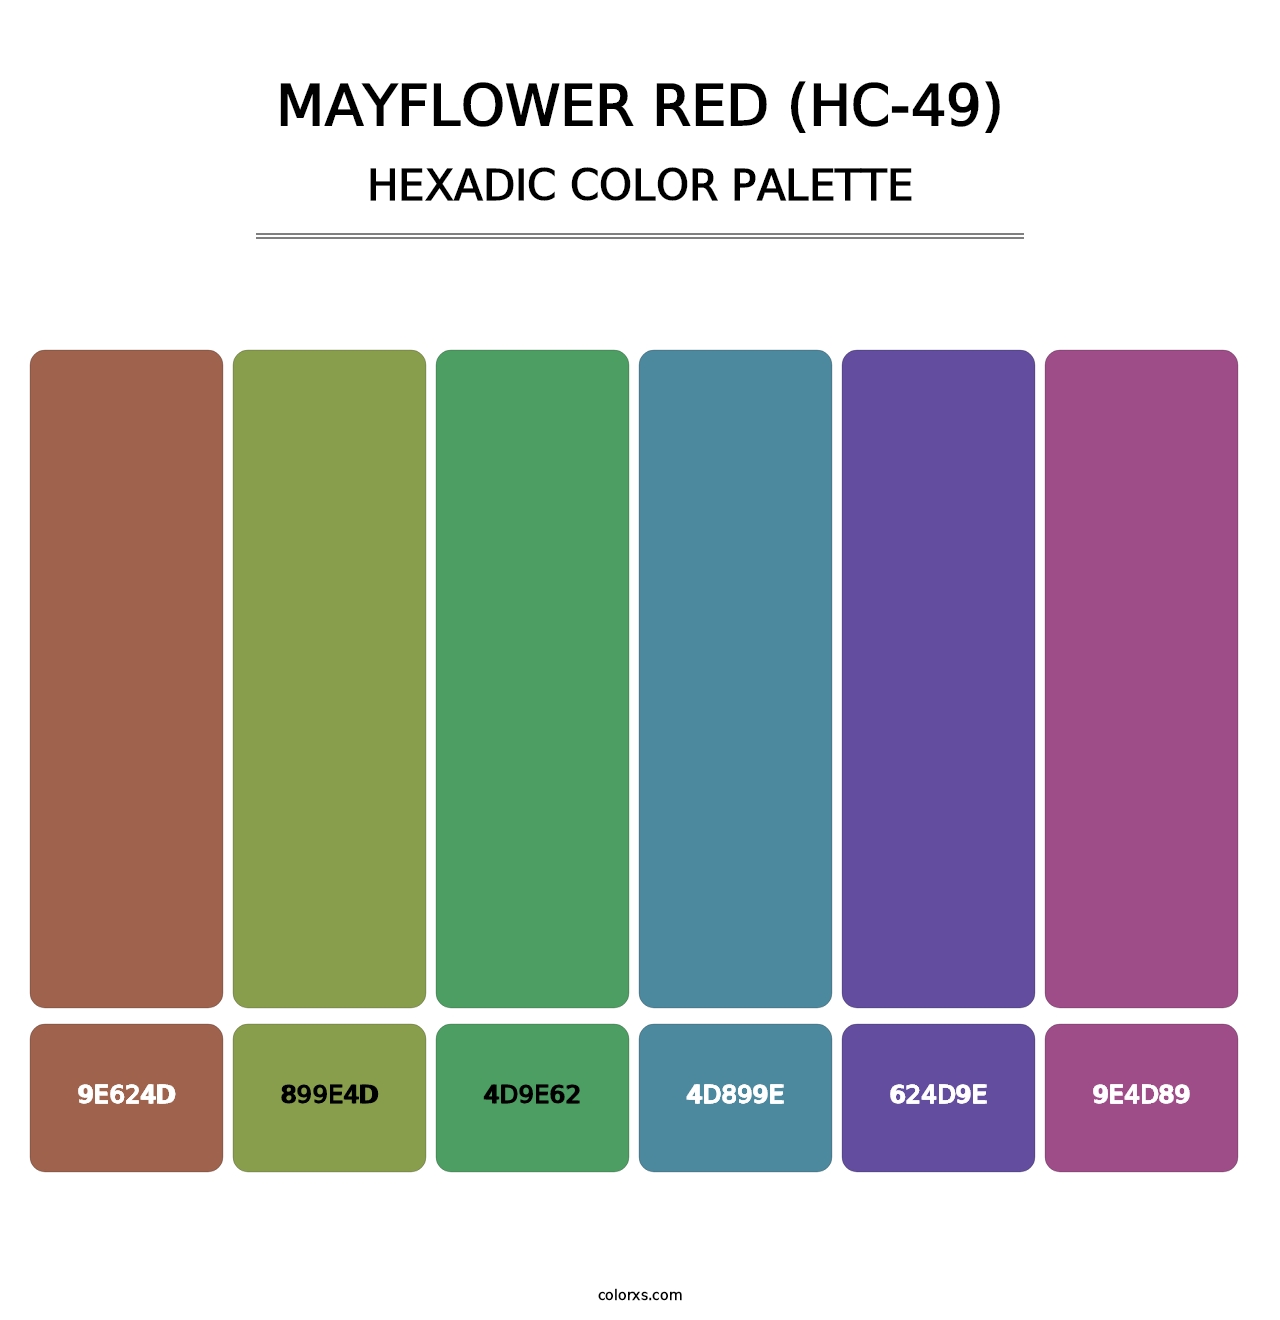 Mayflower Red (HC-49) - Hexadic Color Palette